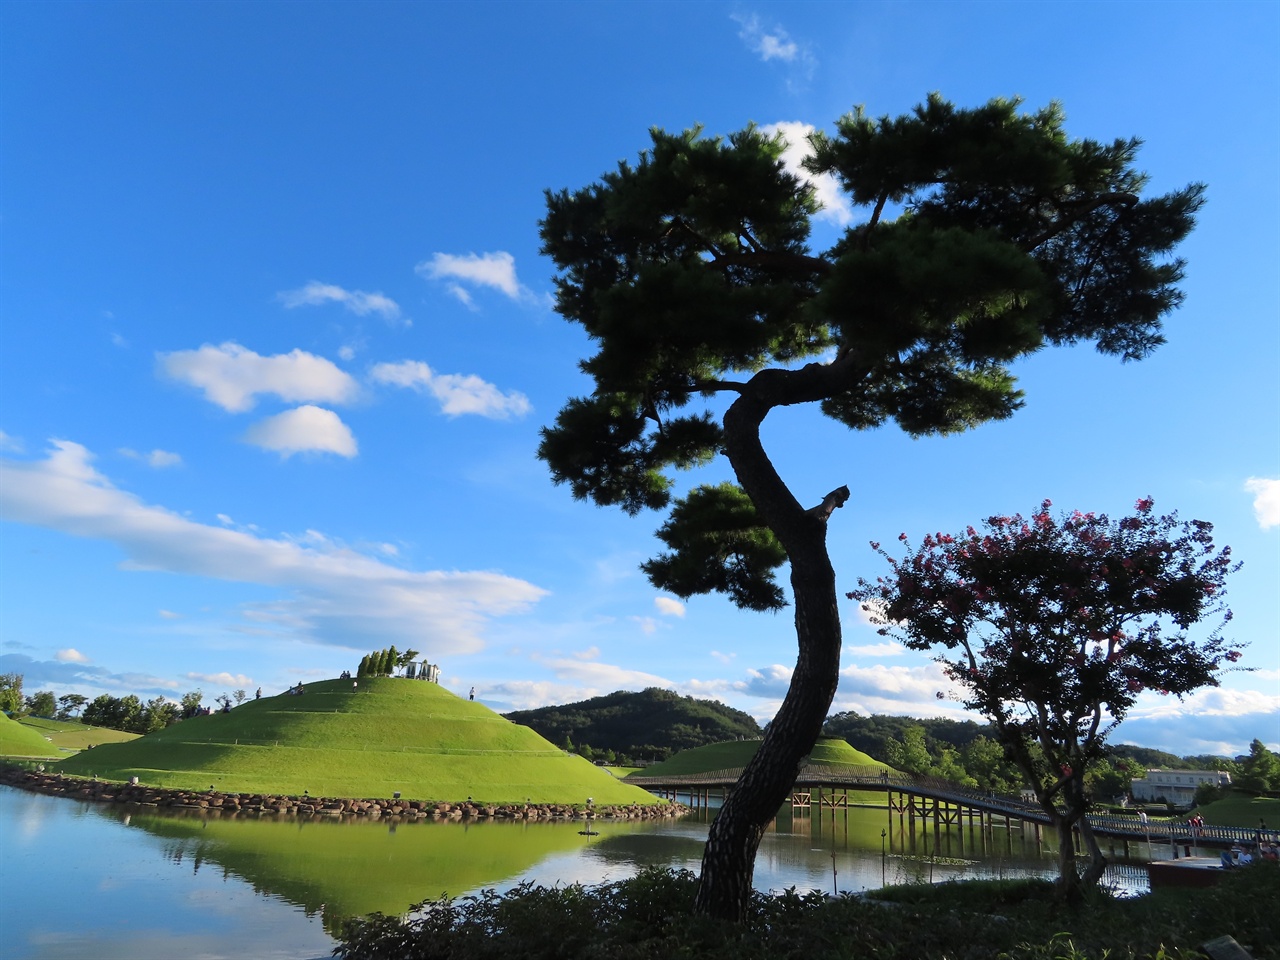 수령이 50년 정도 된, 국가정원에서 사는 "S자 소나무"는 순천만의 S자를 닮은 자태를 갖고 있다.